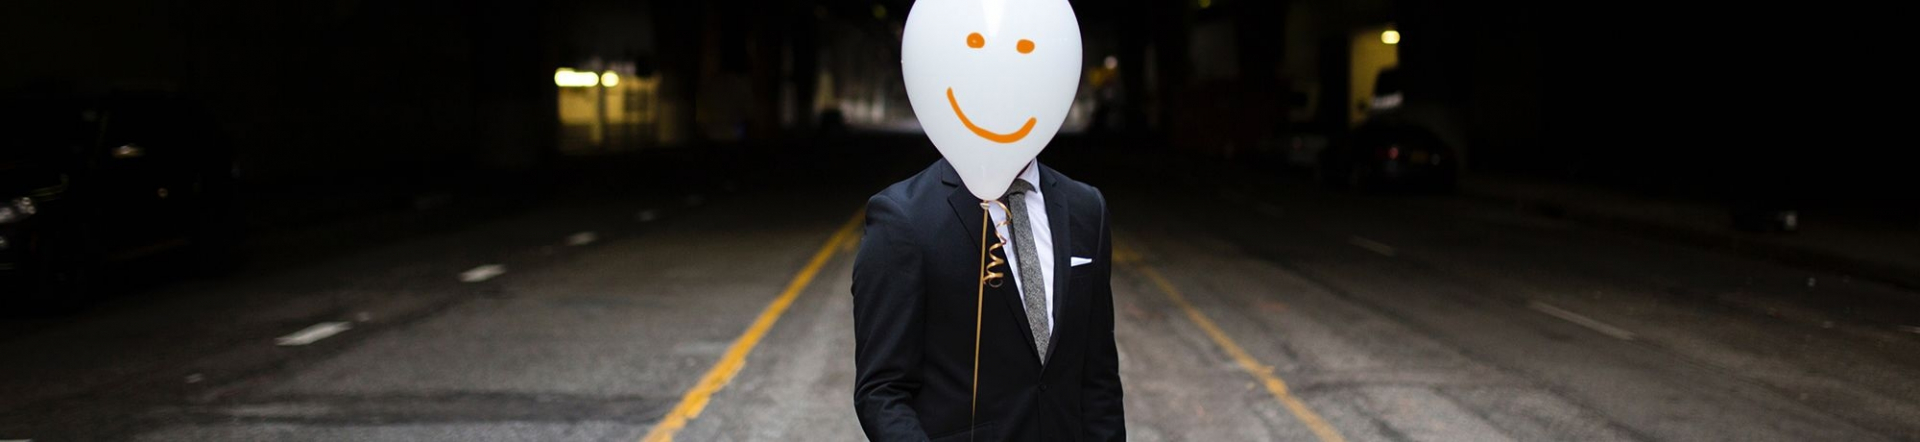 privacy, man in pak wiens hoofd verscholen is achter een ballon met smiley